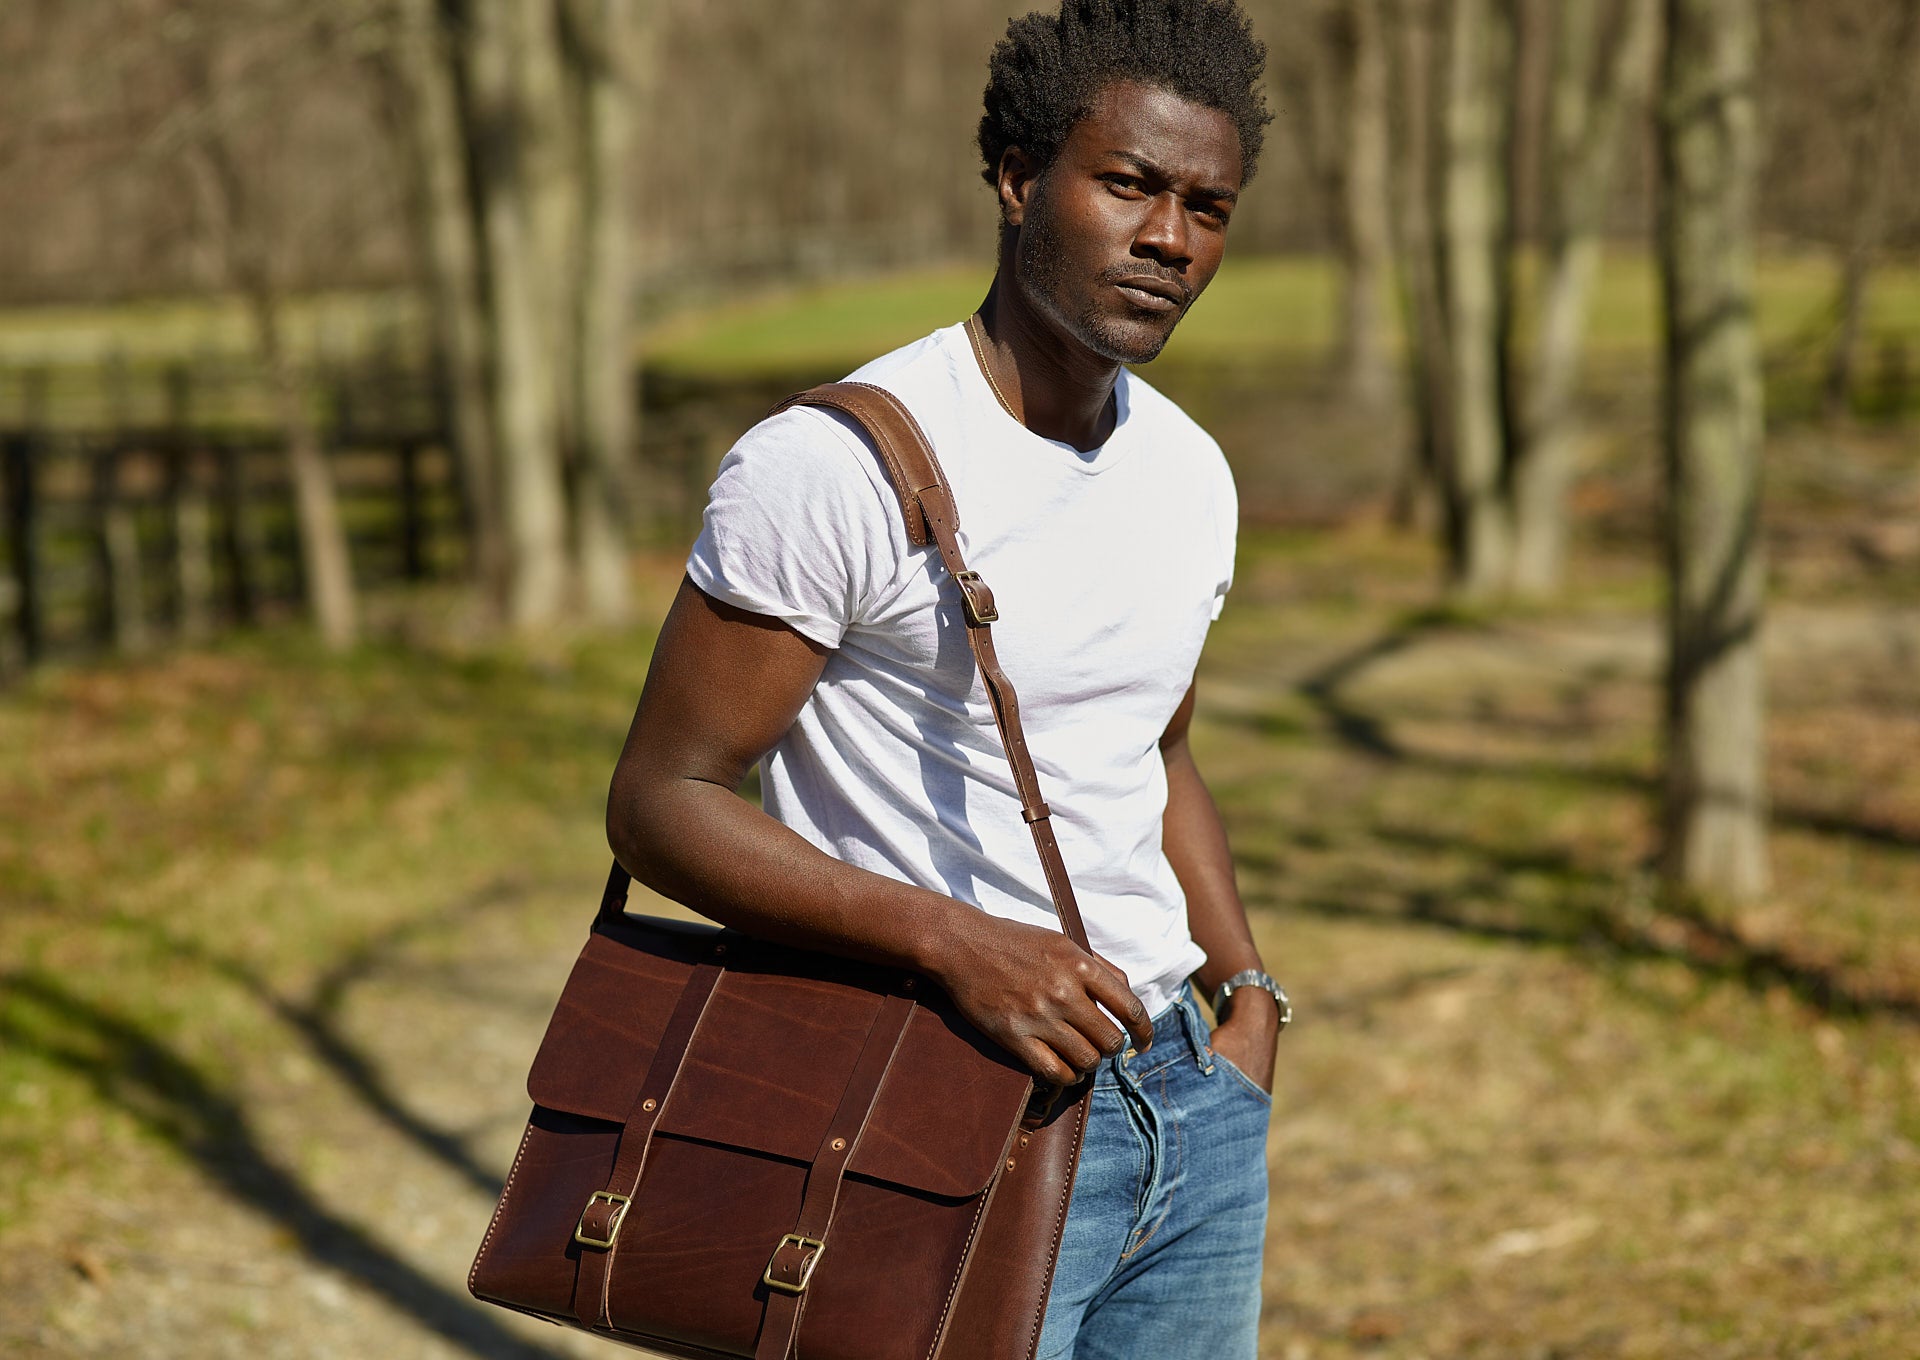 Brown Leather Messenger Bag - Satchel & Page Men's Leather Laptop Bag